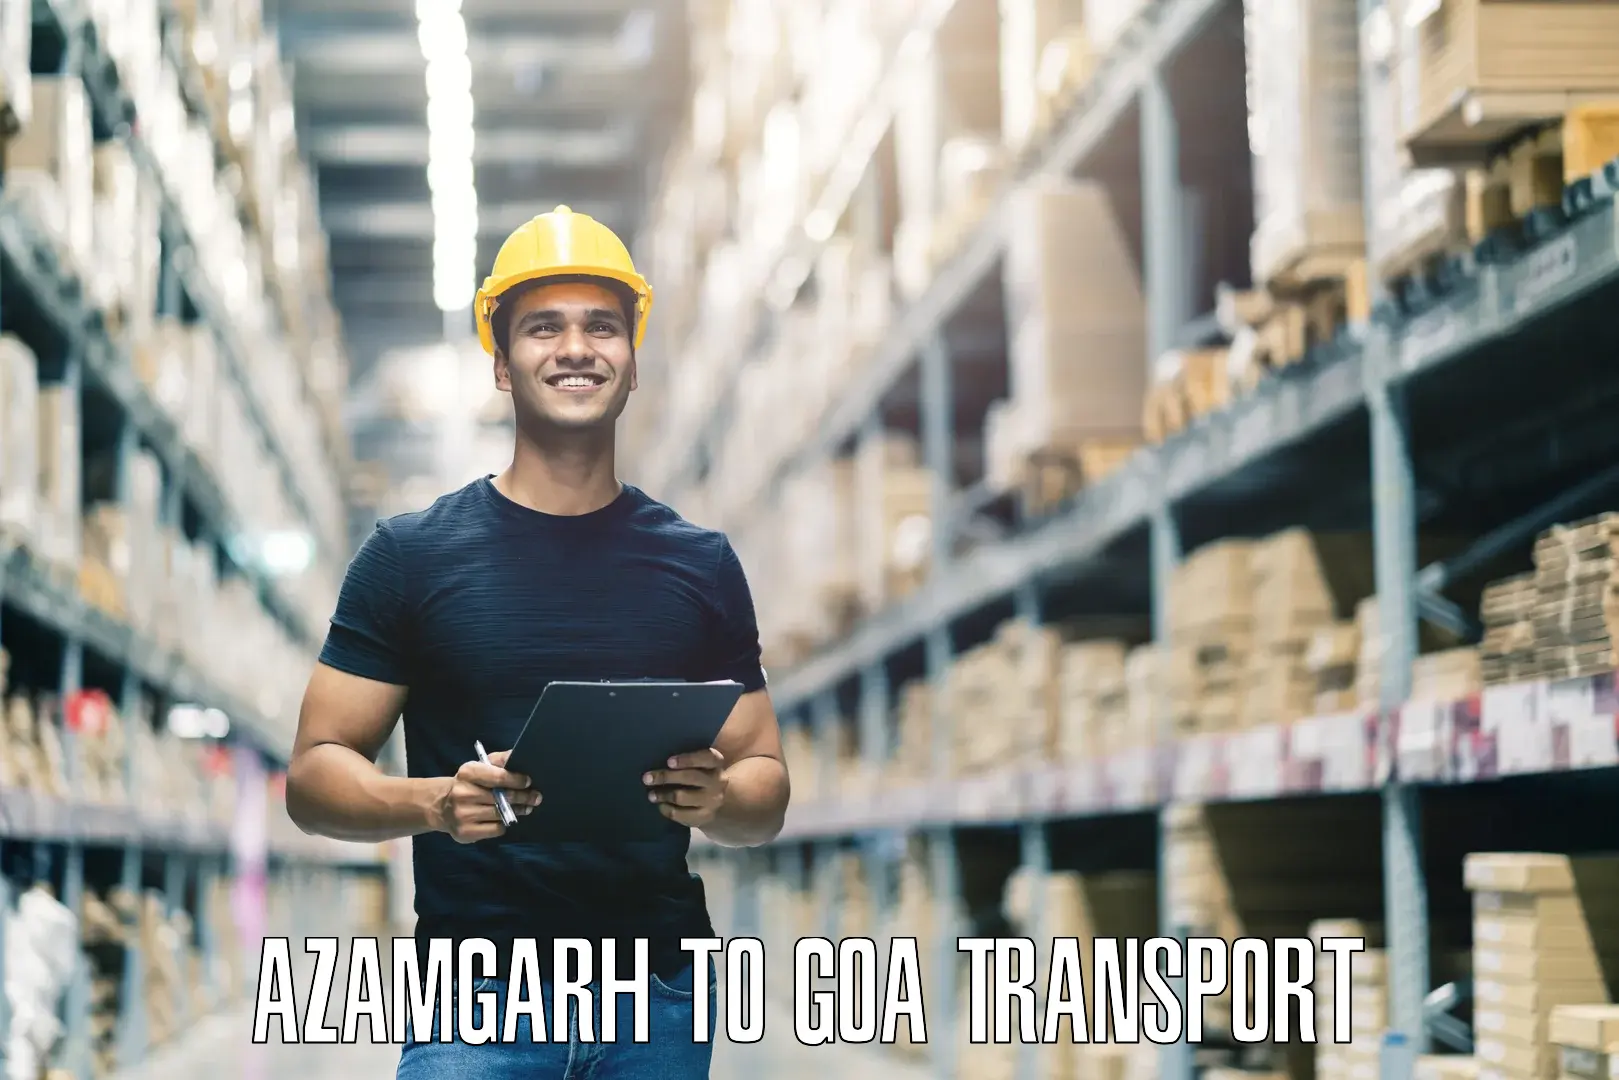 Luggage transport services Azamgarh to Goa